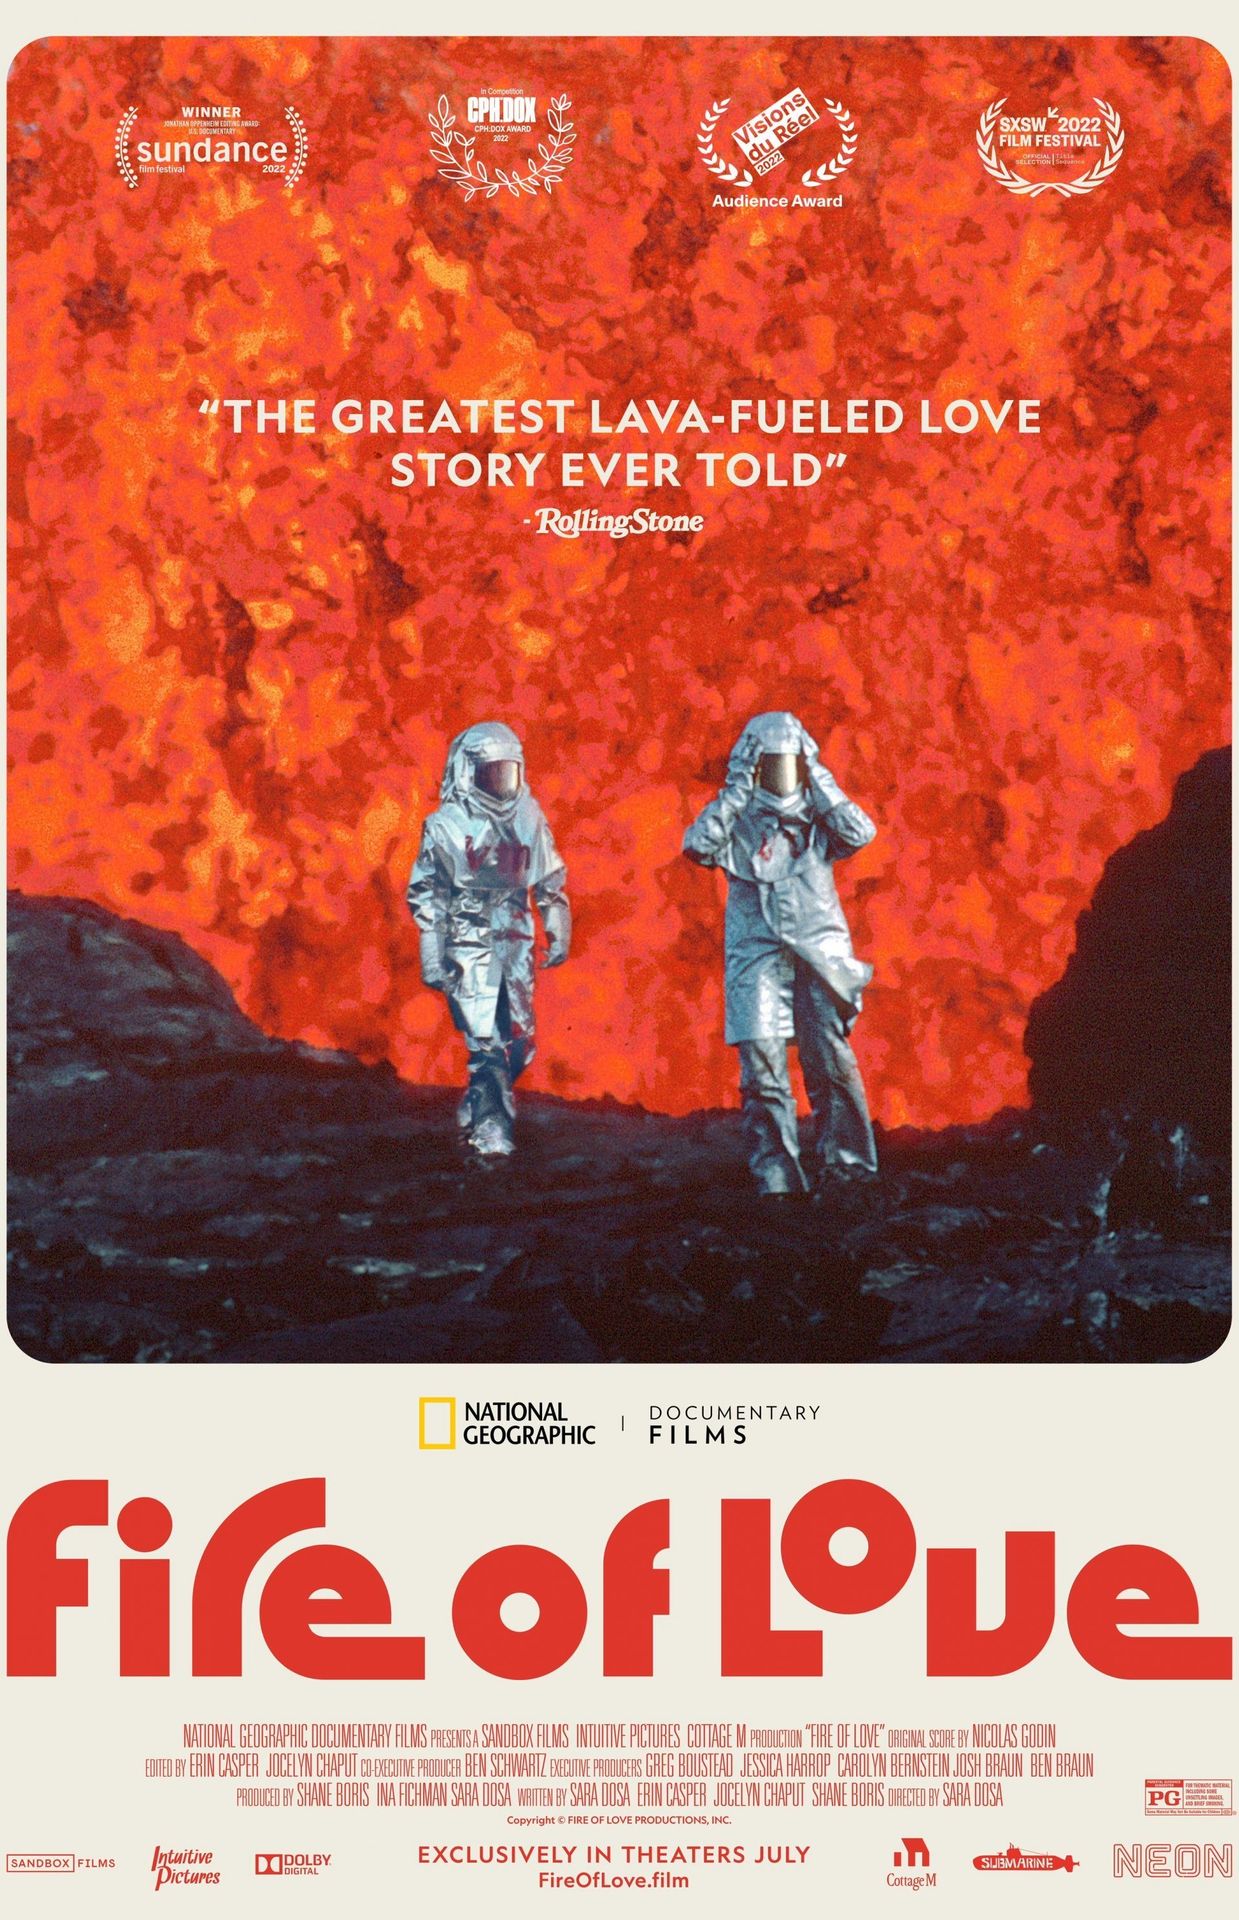 L'affiche de "Fire of love"